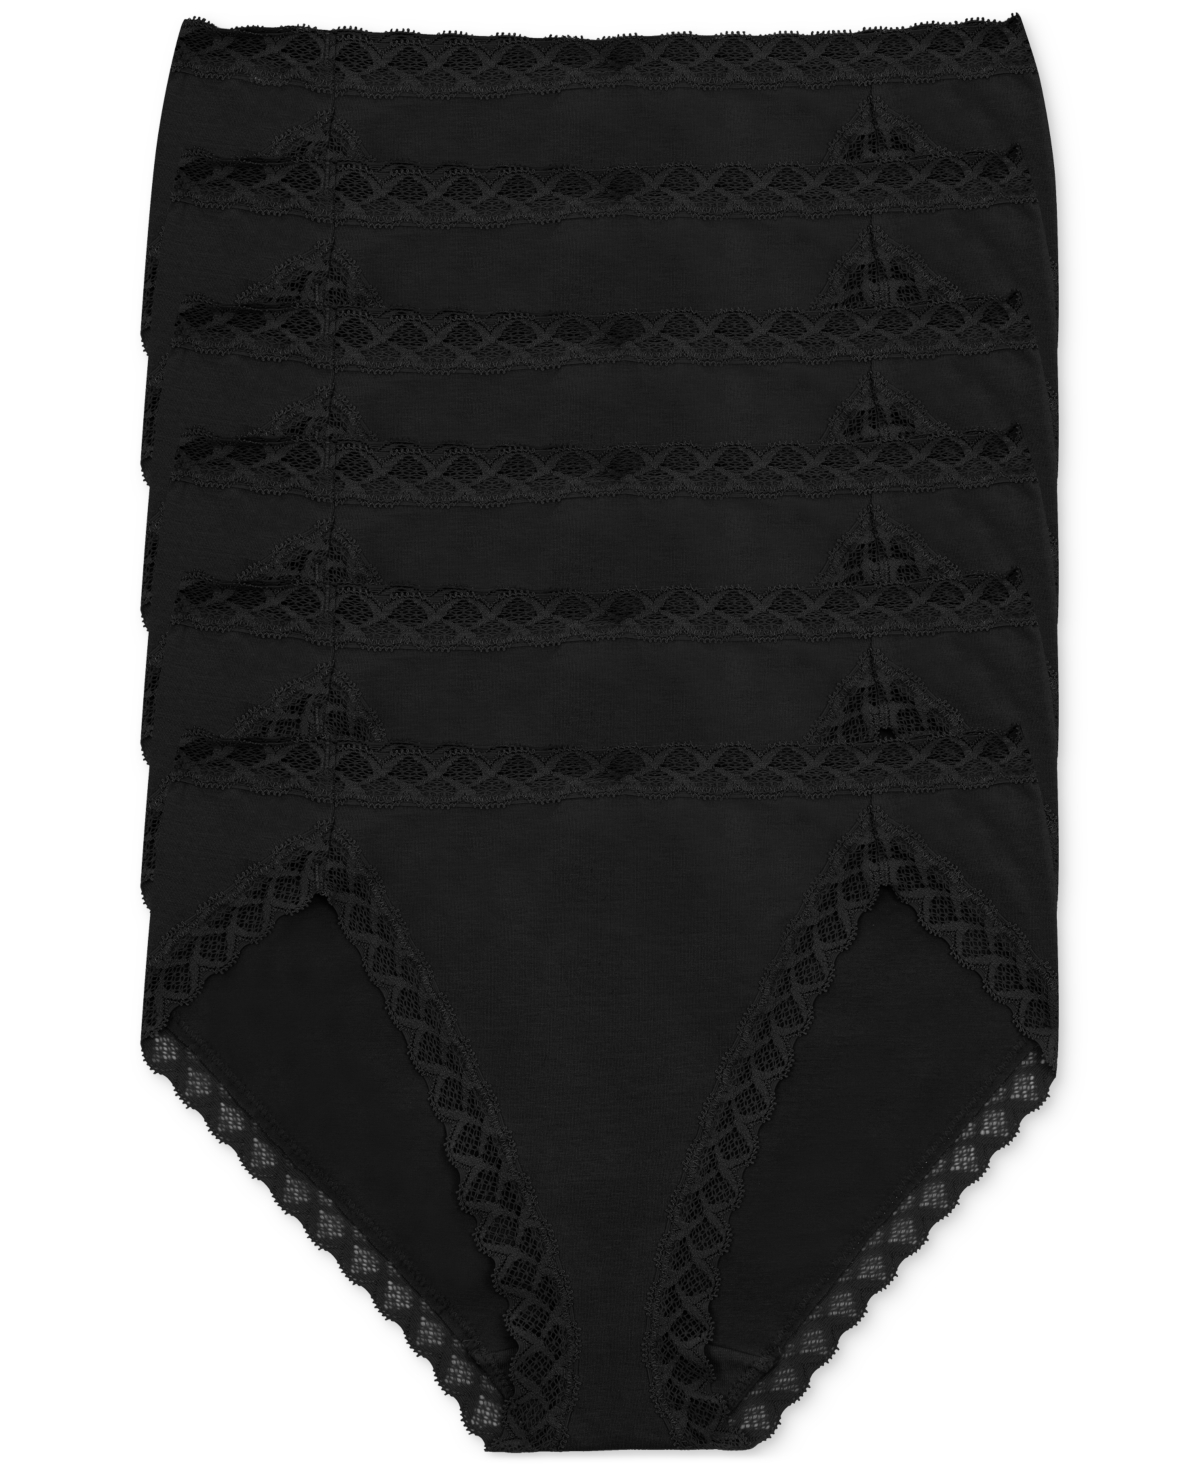 Women's 6-Pk. Bliss French Cut Underwear 152058P6 - Black / Black / Black / Black / Black /